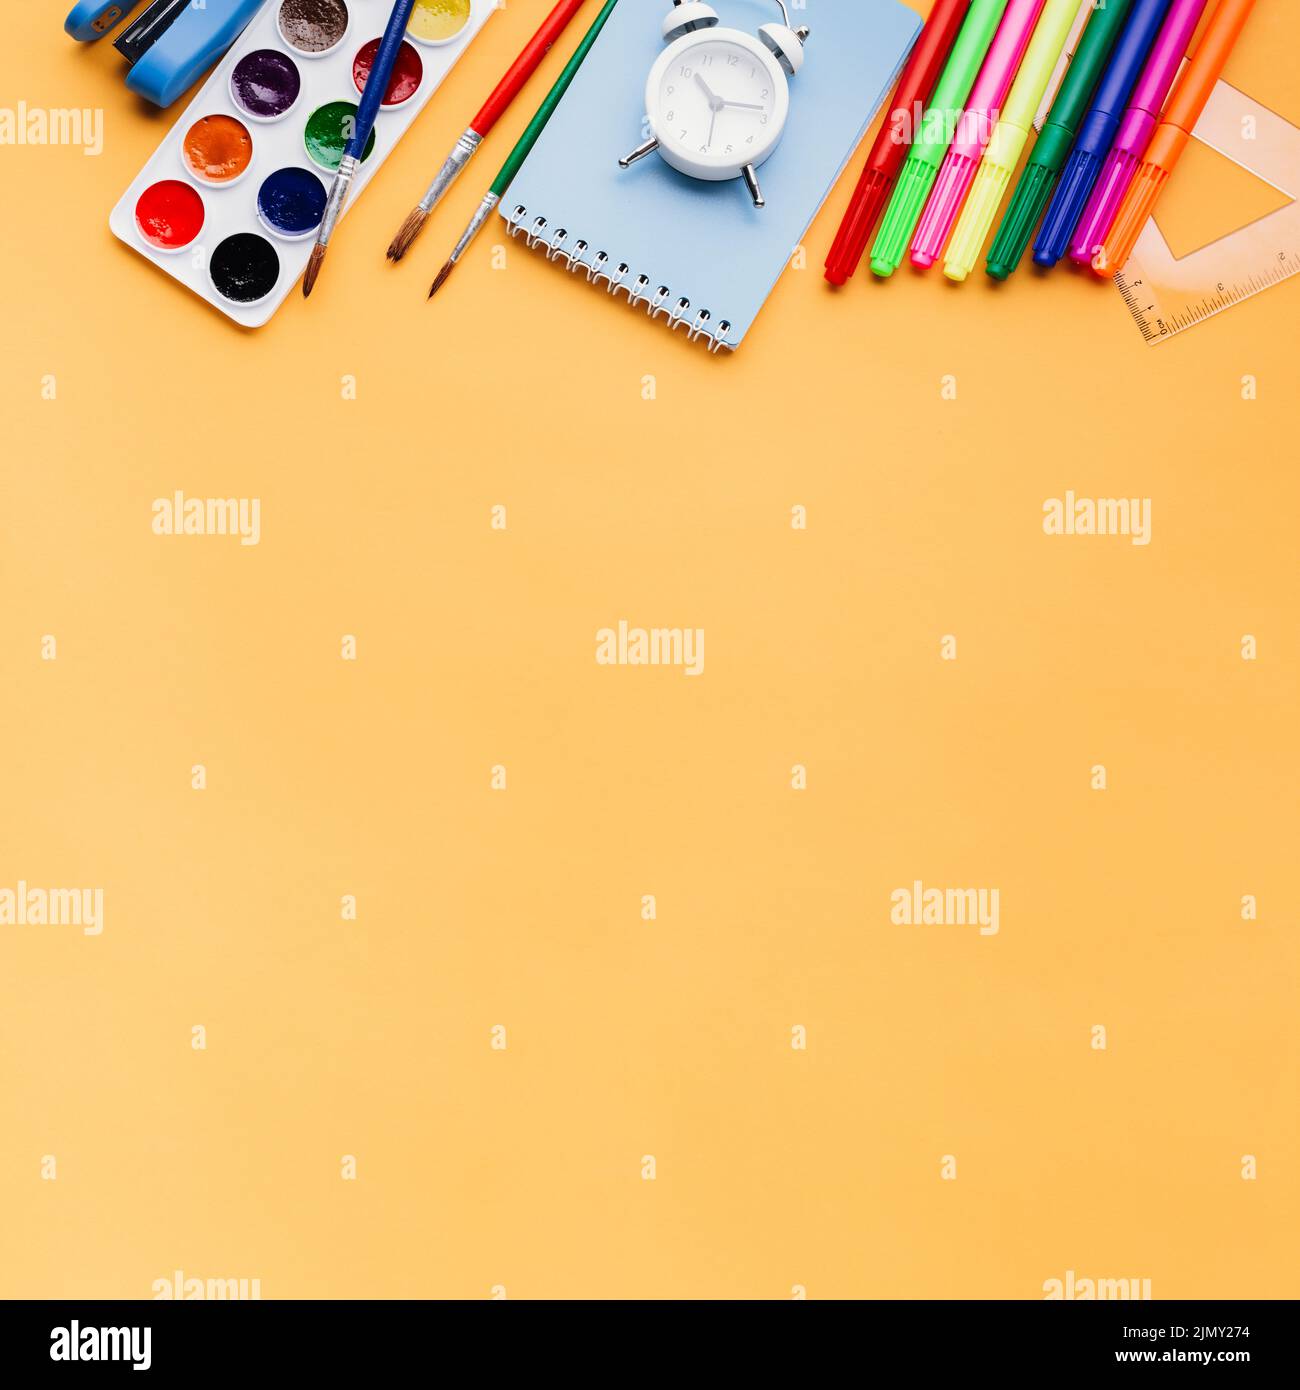 Stationery orange background Stock Photo